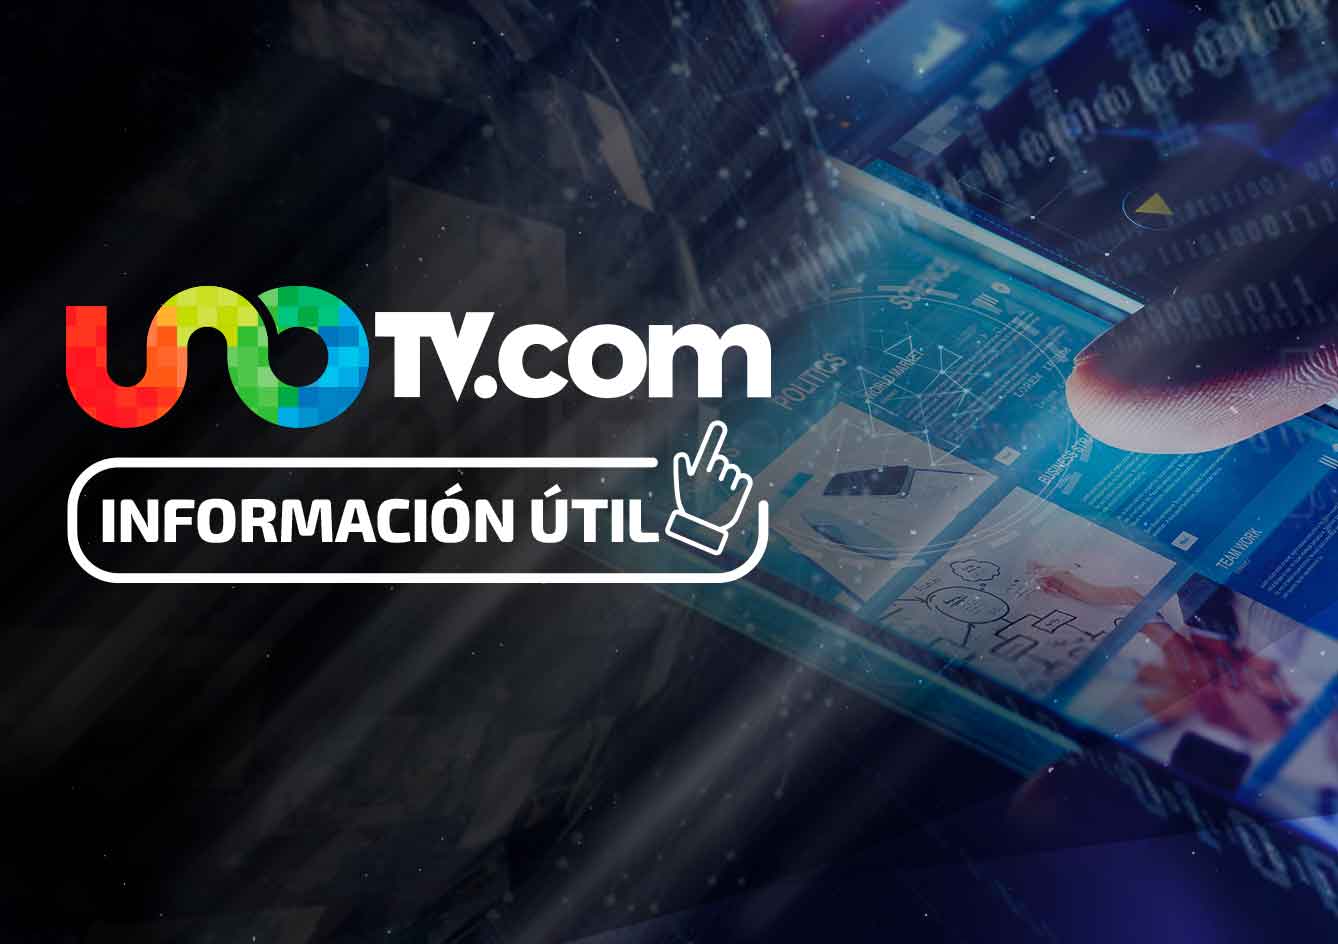 Unotv.com es el portal de noticias más leído en México